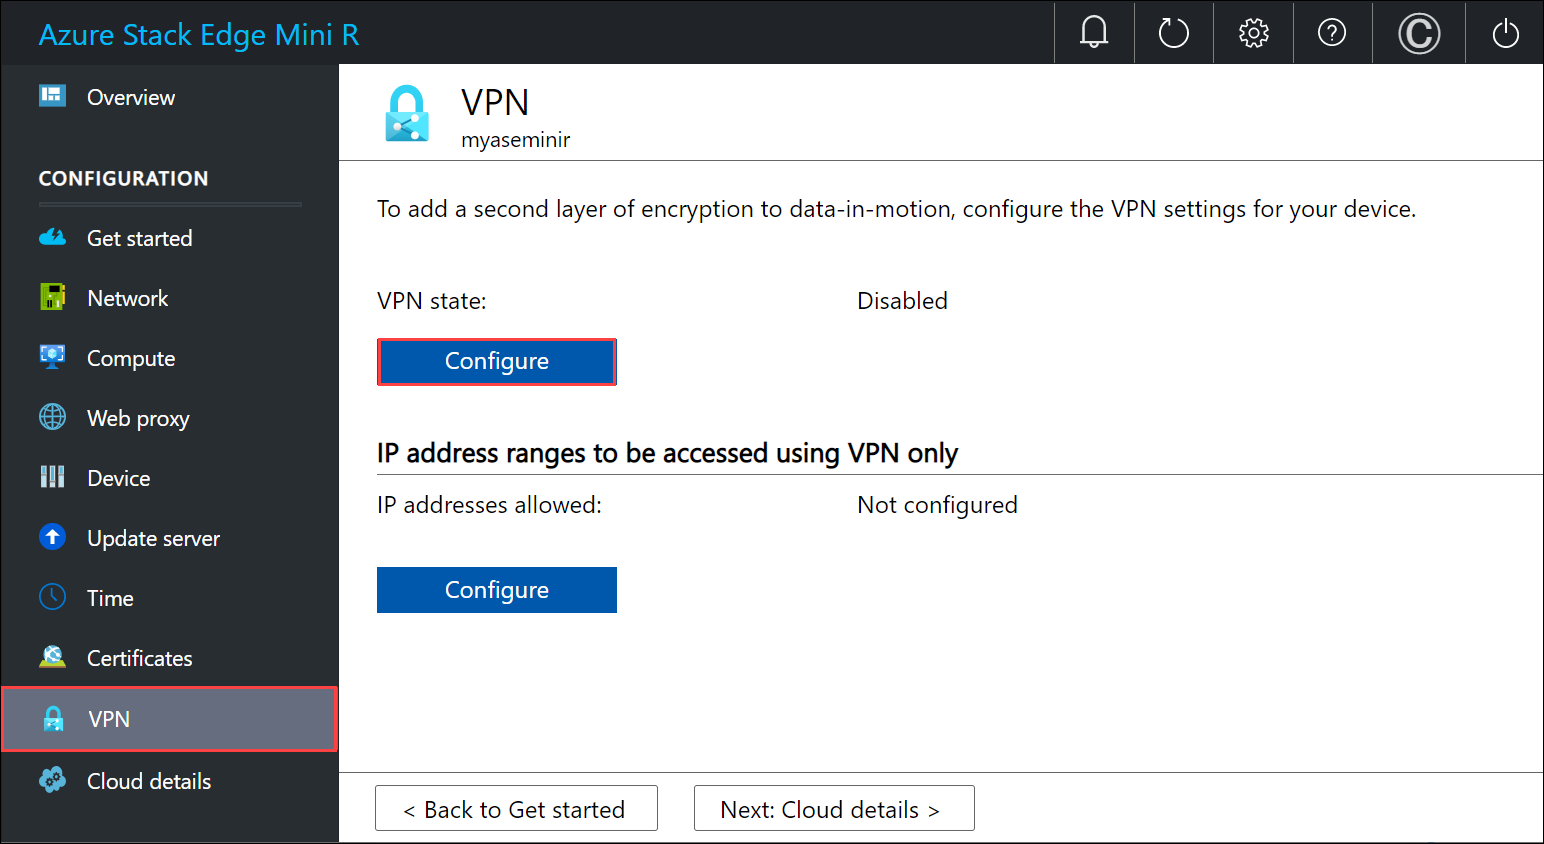 Konfigurieren des VPN: Lokale Benutzeroberfläche 1